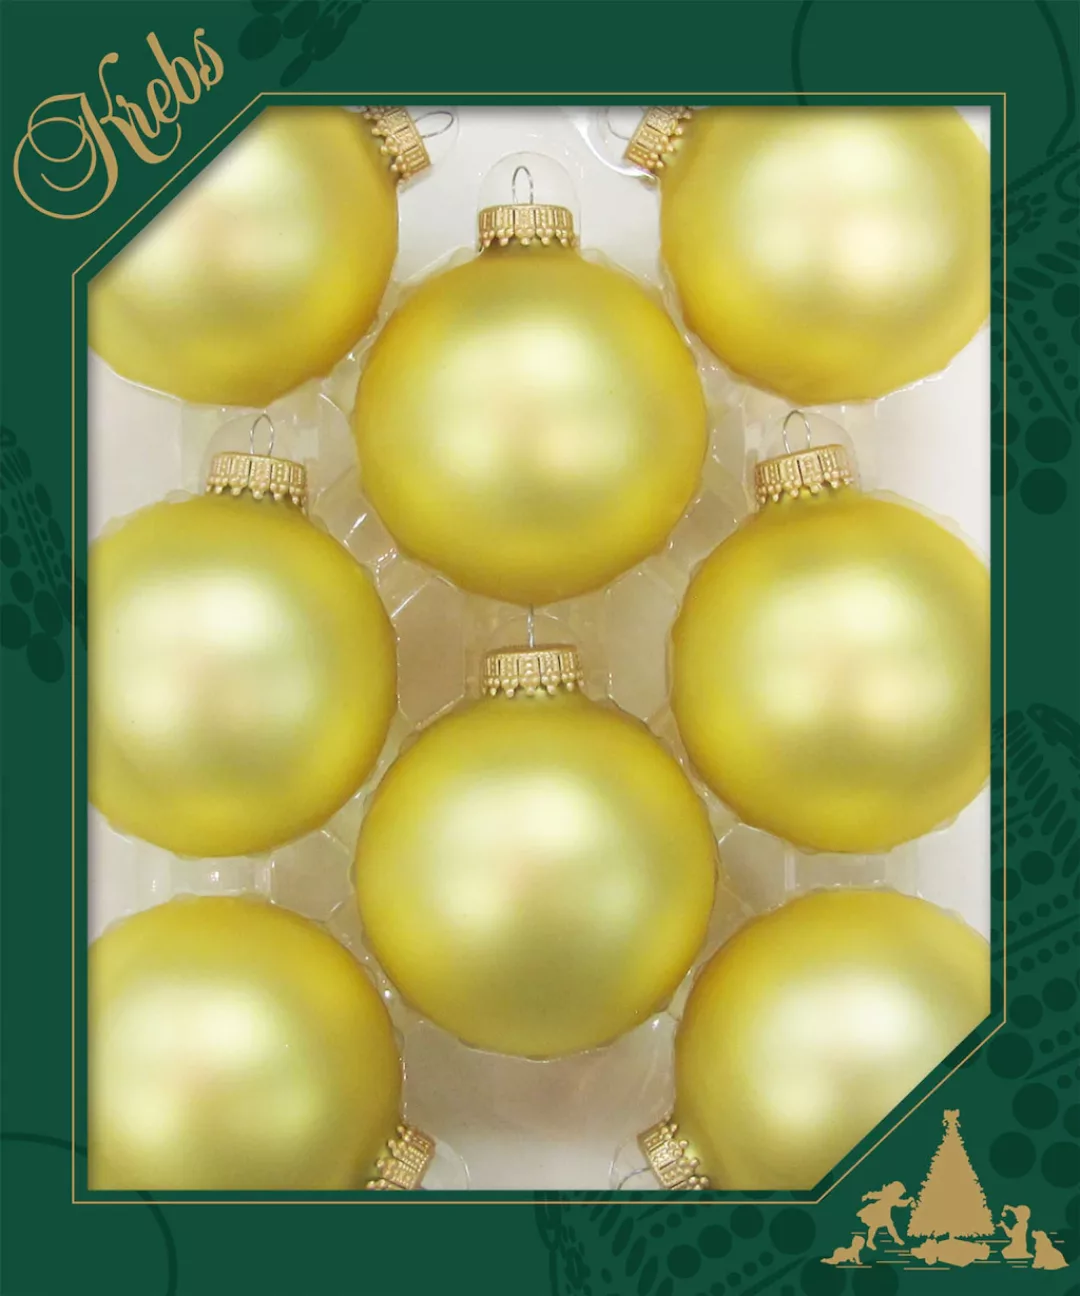 Krebs Glas Lauscha Weihnachtsbaumkugel »CBK70217, Weihnachtsdeko, Christbau günstig online kaufen